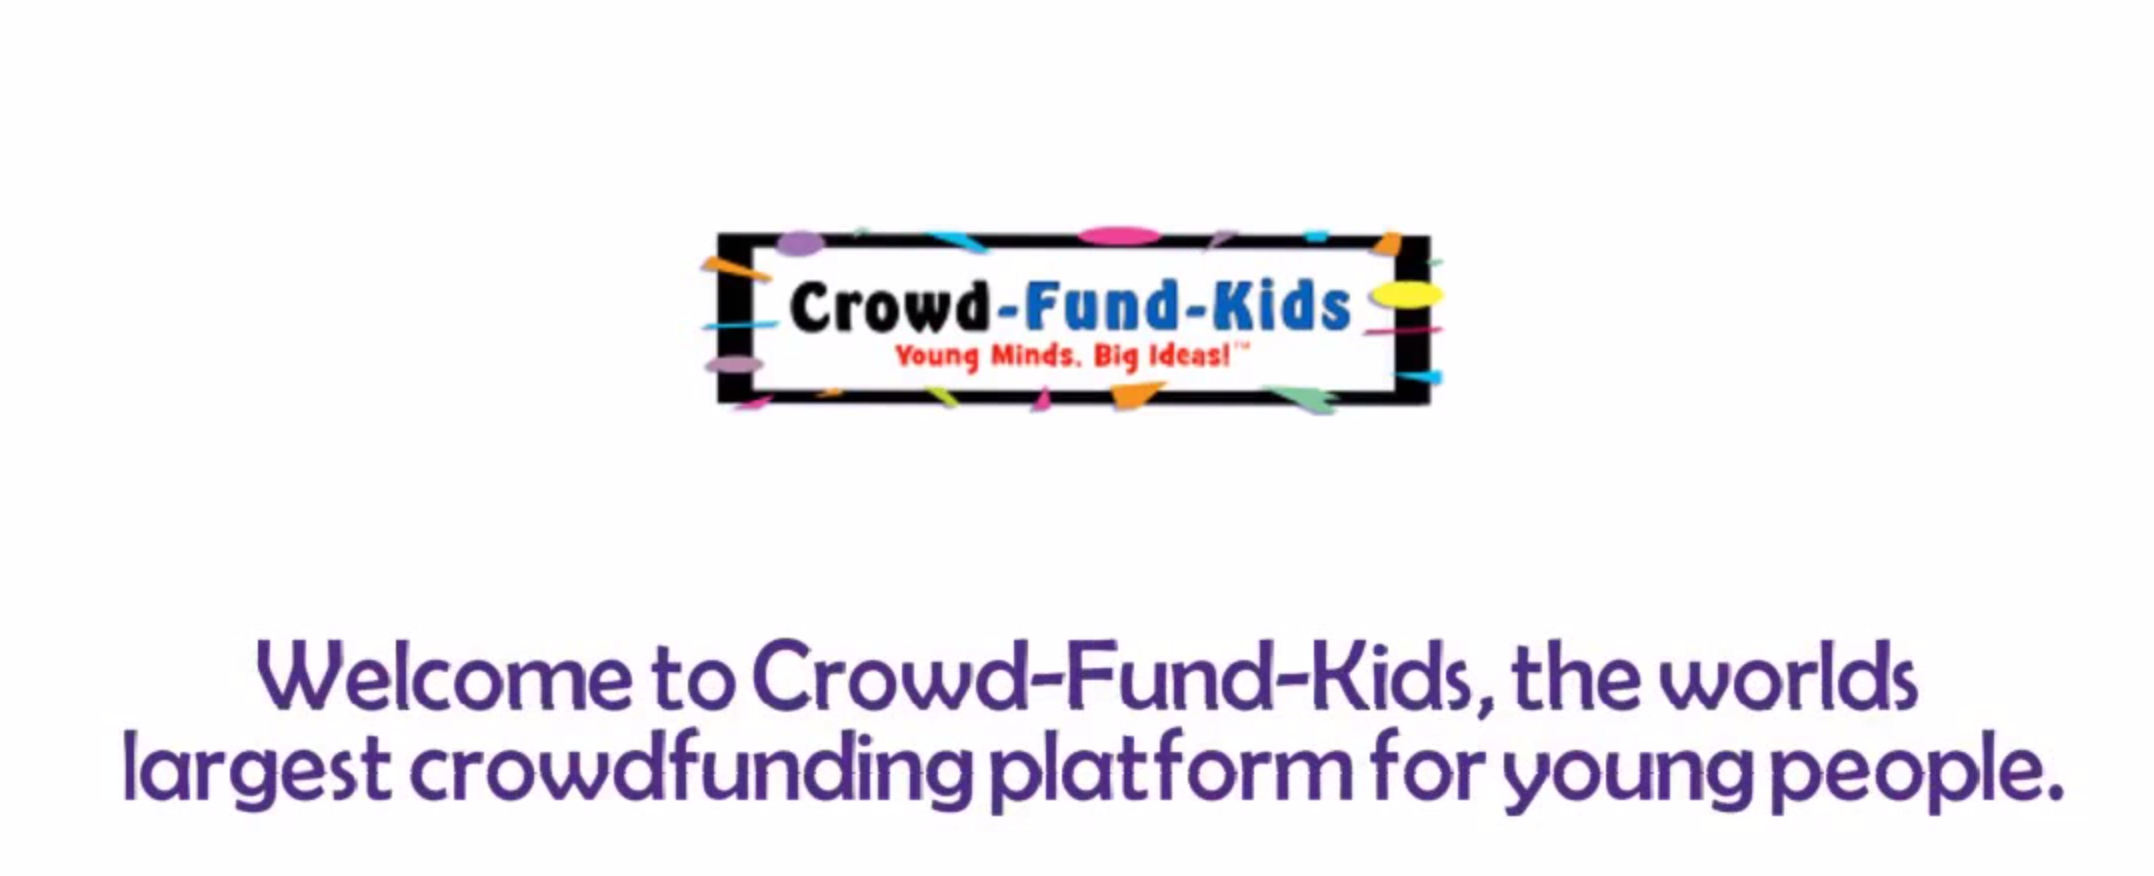 Crowd-Fund-Kids